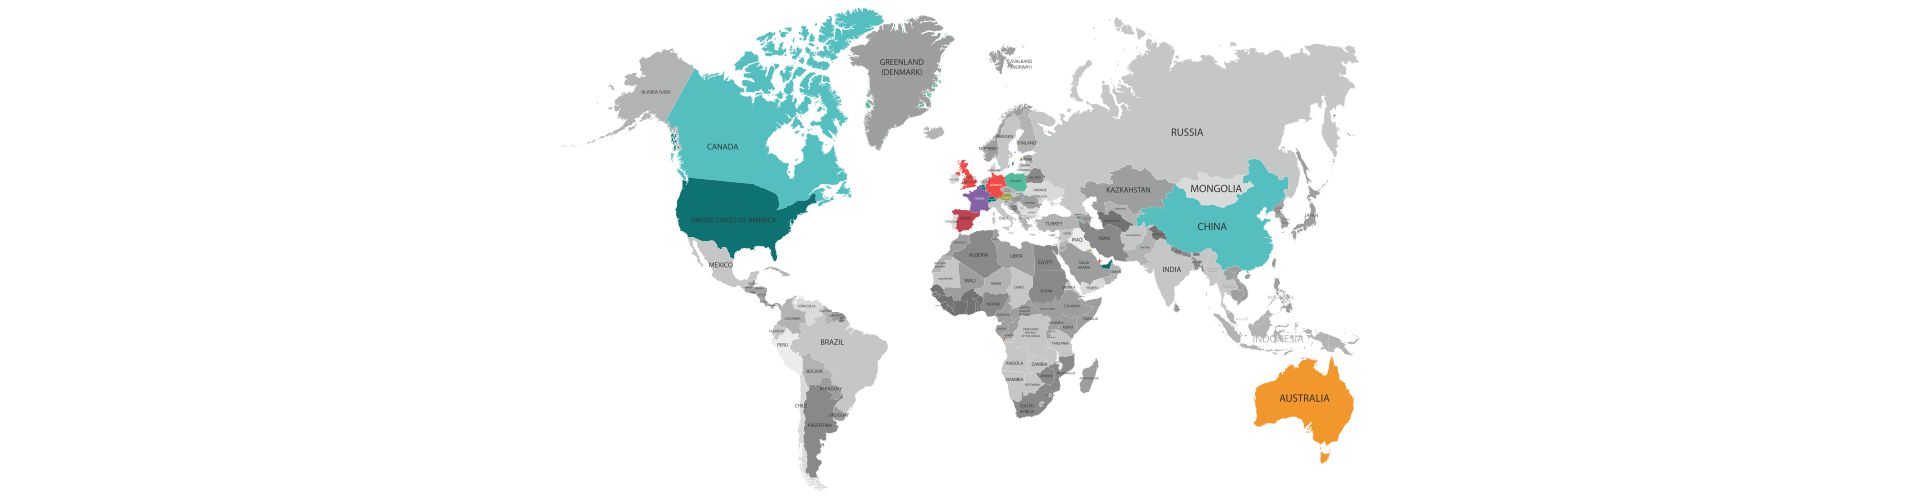 Family/Ancestry data across the globe